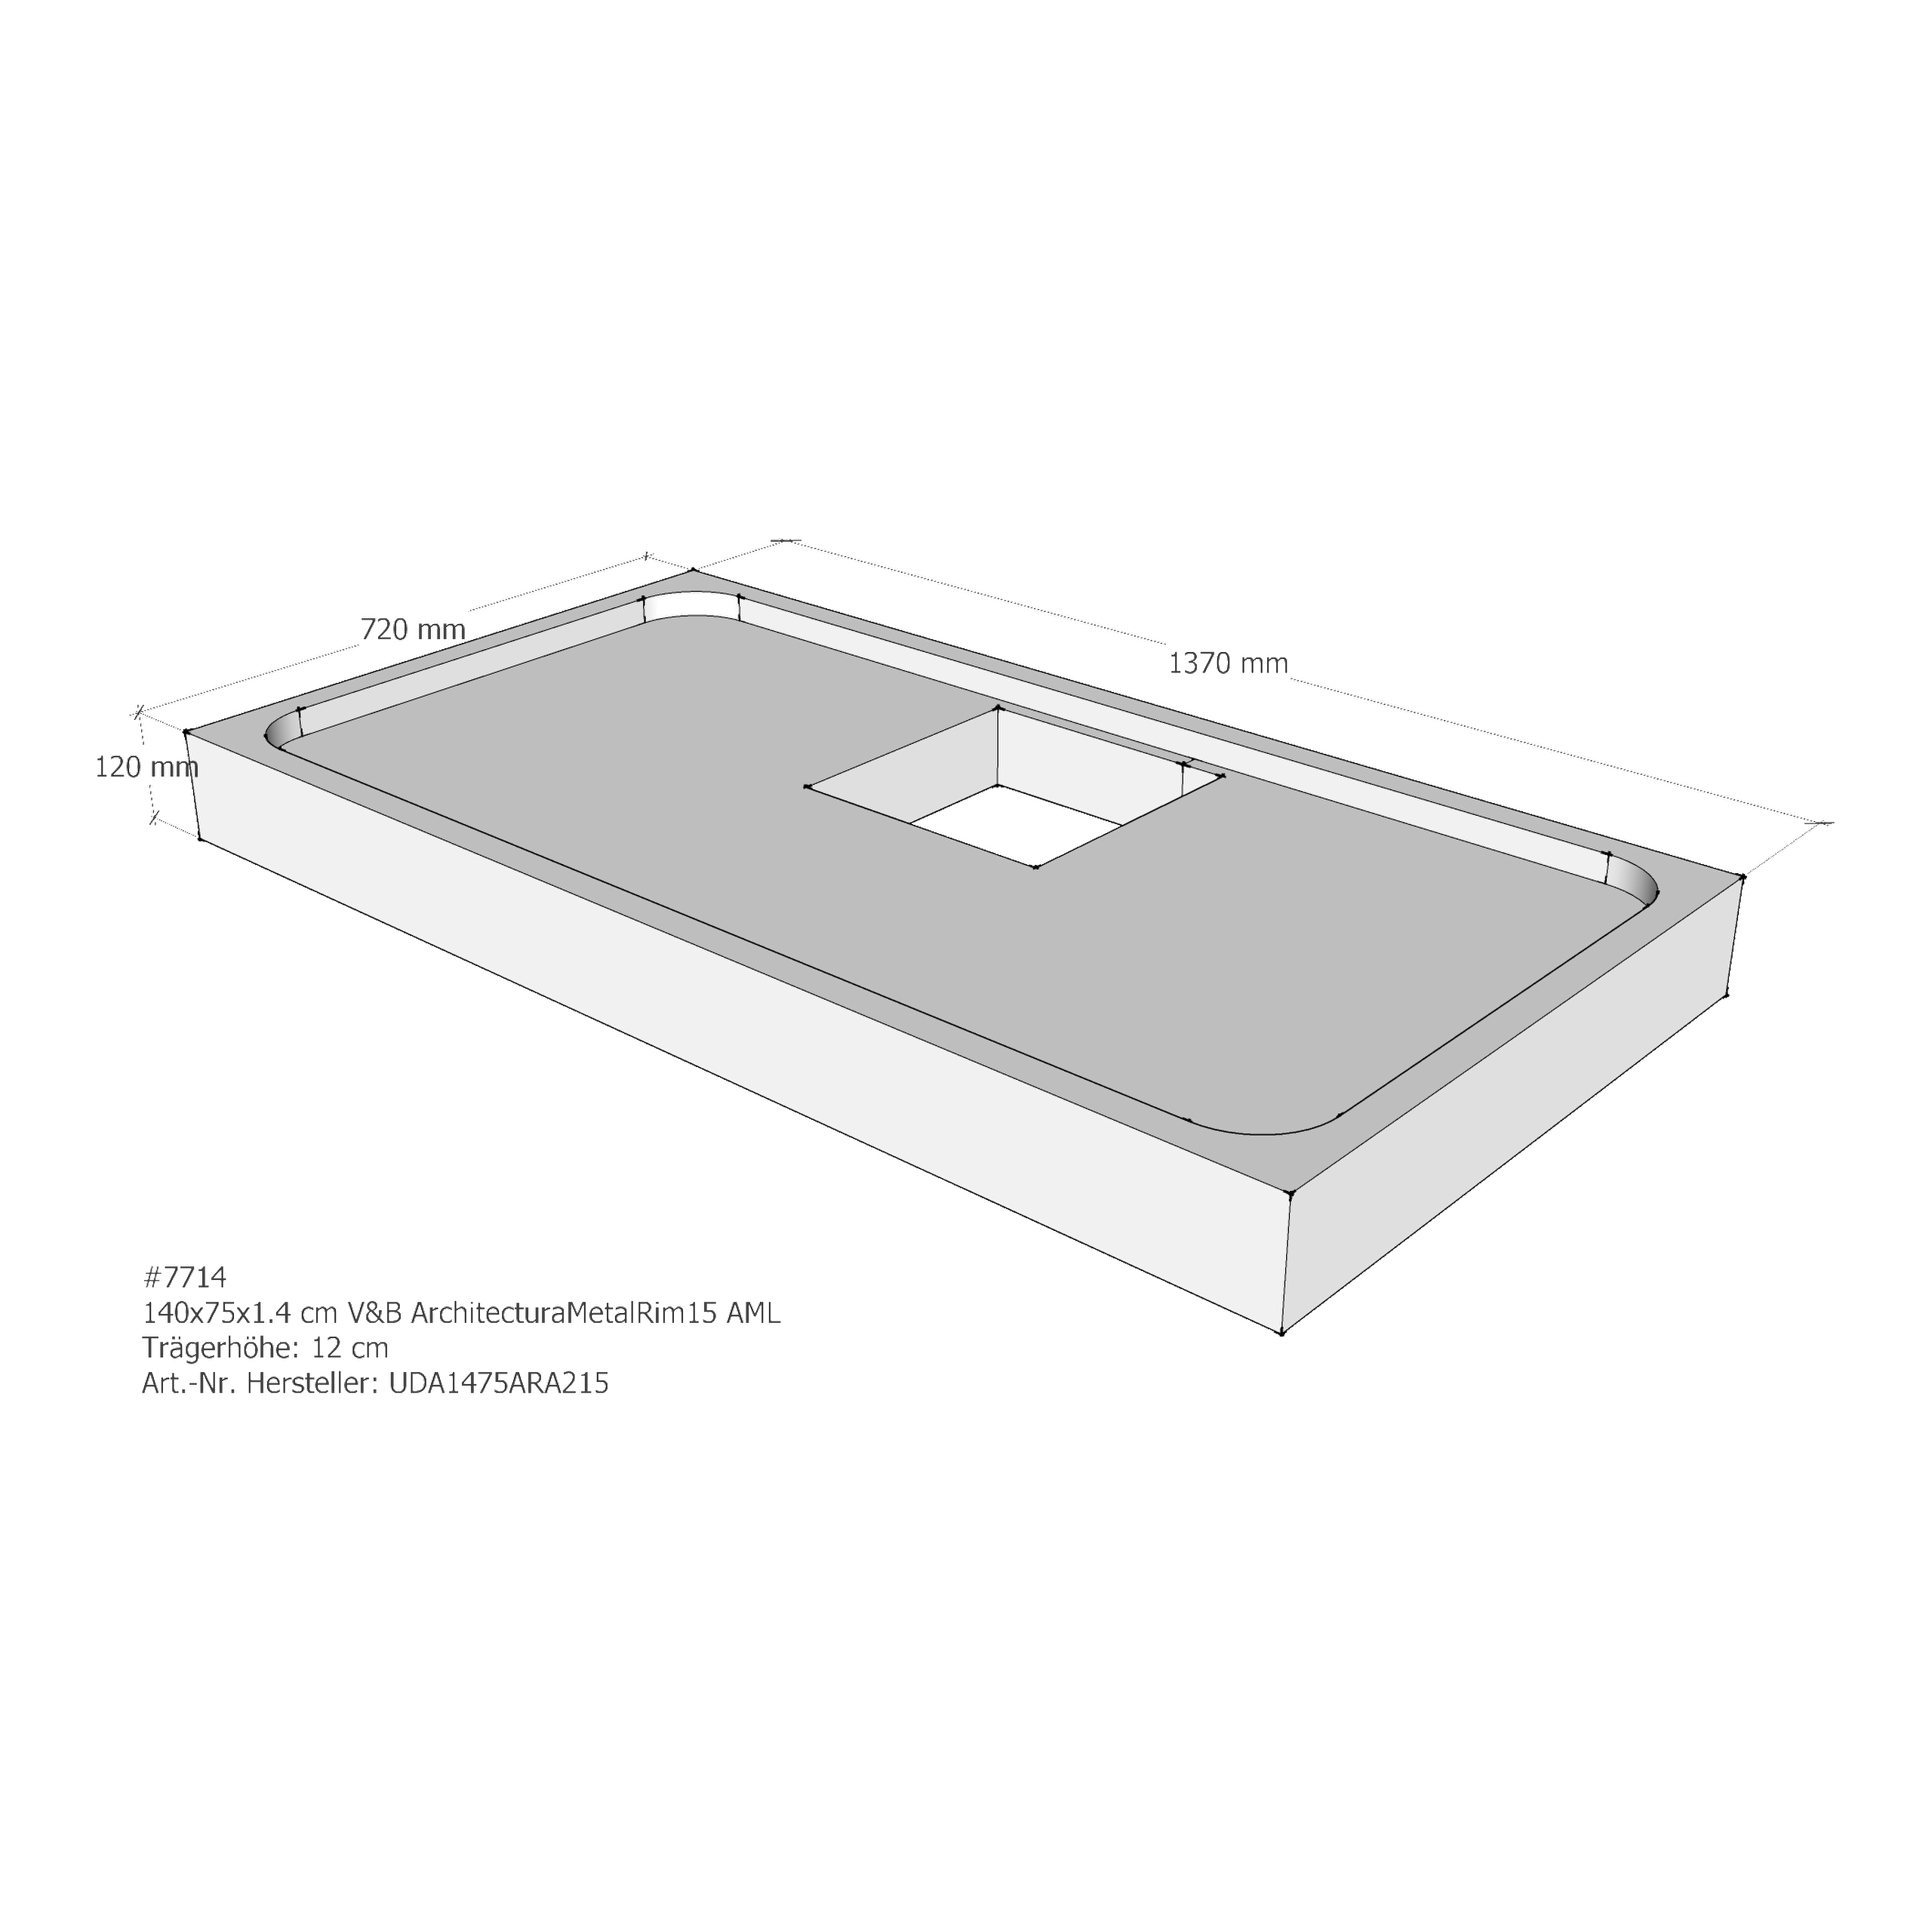 Duschwannenträger für Villeroy & Boch Architectura MetalRim 140 × 75 × 1,4 cm